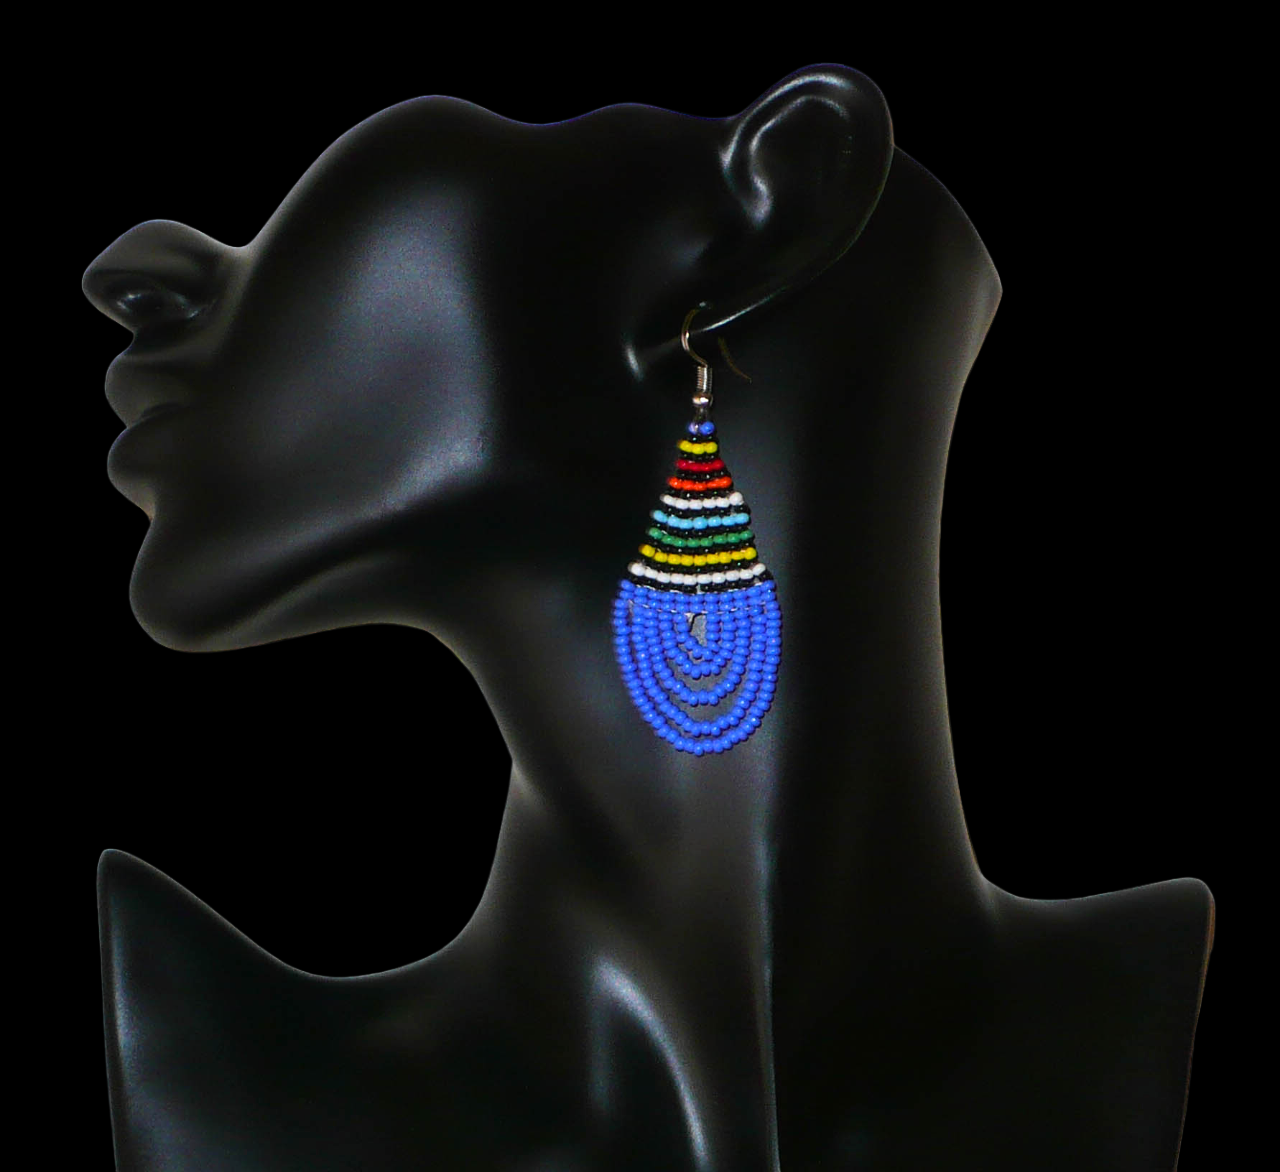 Boucles d'oreilles sud-africaines zouloues en forme de gouttes composées d'un tissage de perles de rocaille bleues et multicolores. Elles mesurent 7 cm de long et 2,5 cm de large et se portent sur des oreilles percées. Timeless Fineries